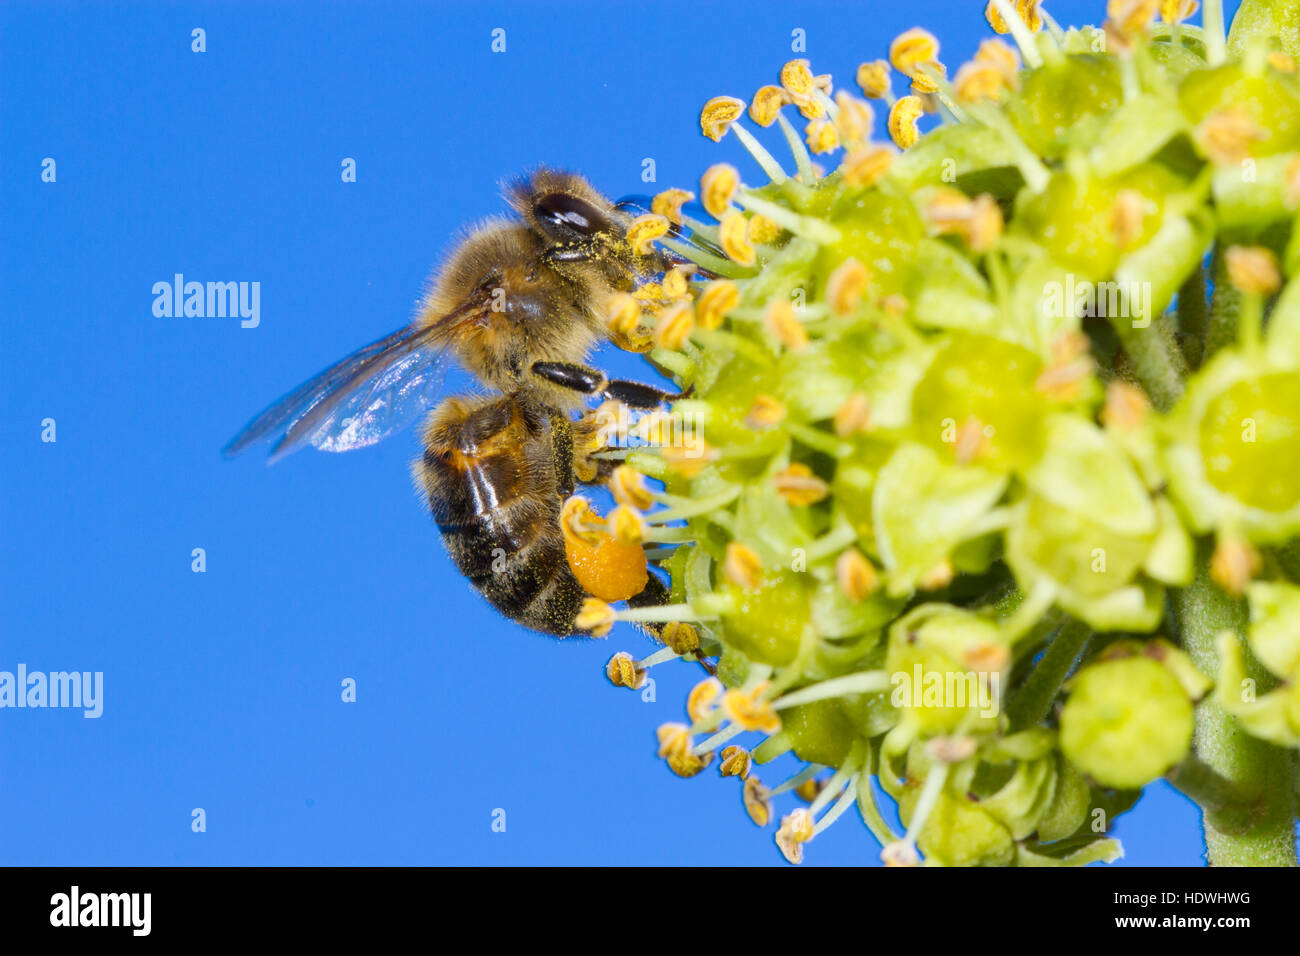 'Abeille à miel (Apis mellifera) travailleur adulte se nourrit de lierre (Hedera helix) fleurs. Powys, Pays de Galles. Septembre. Banque D'Images